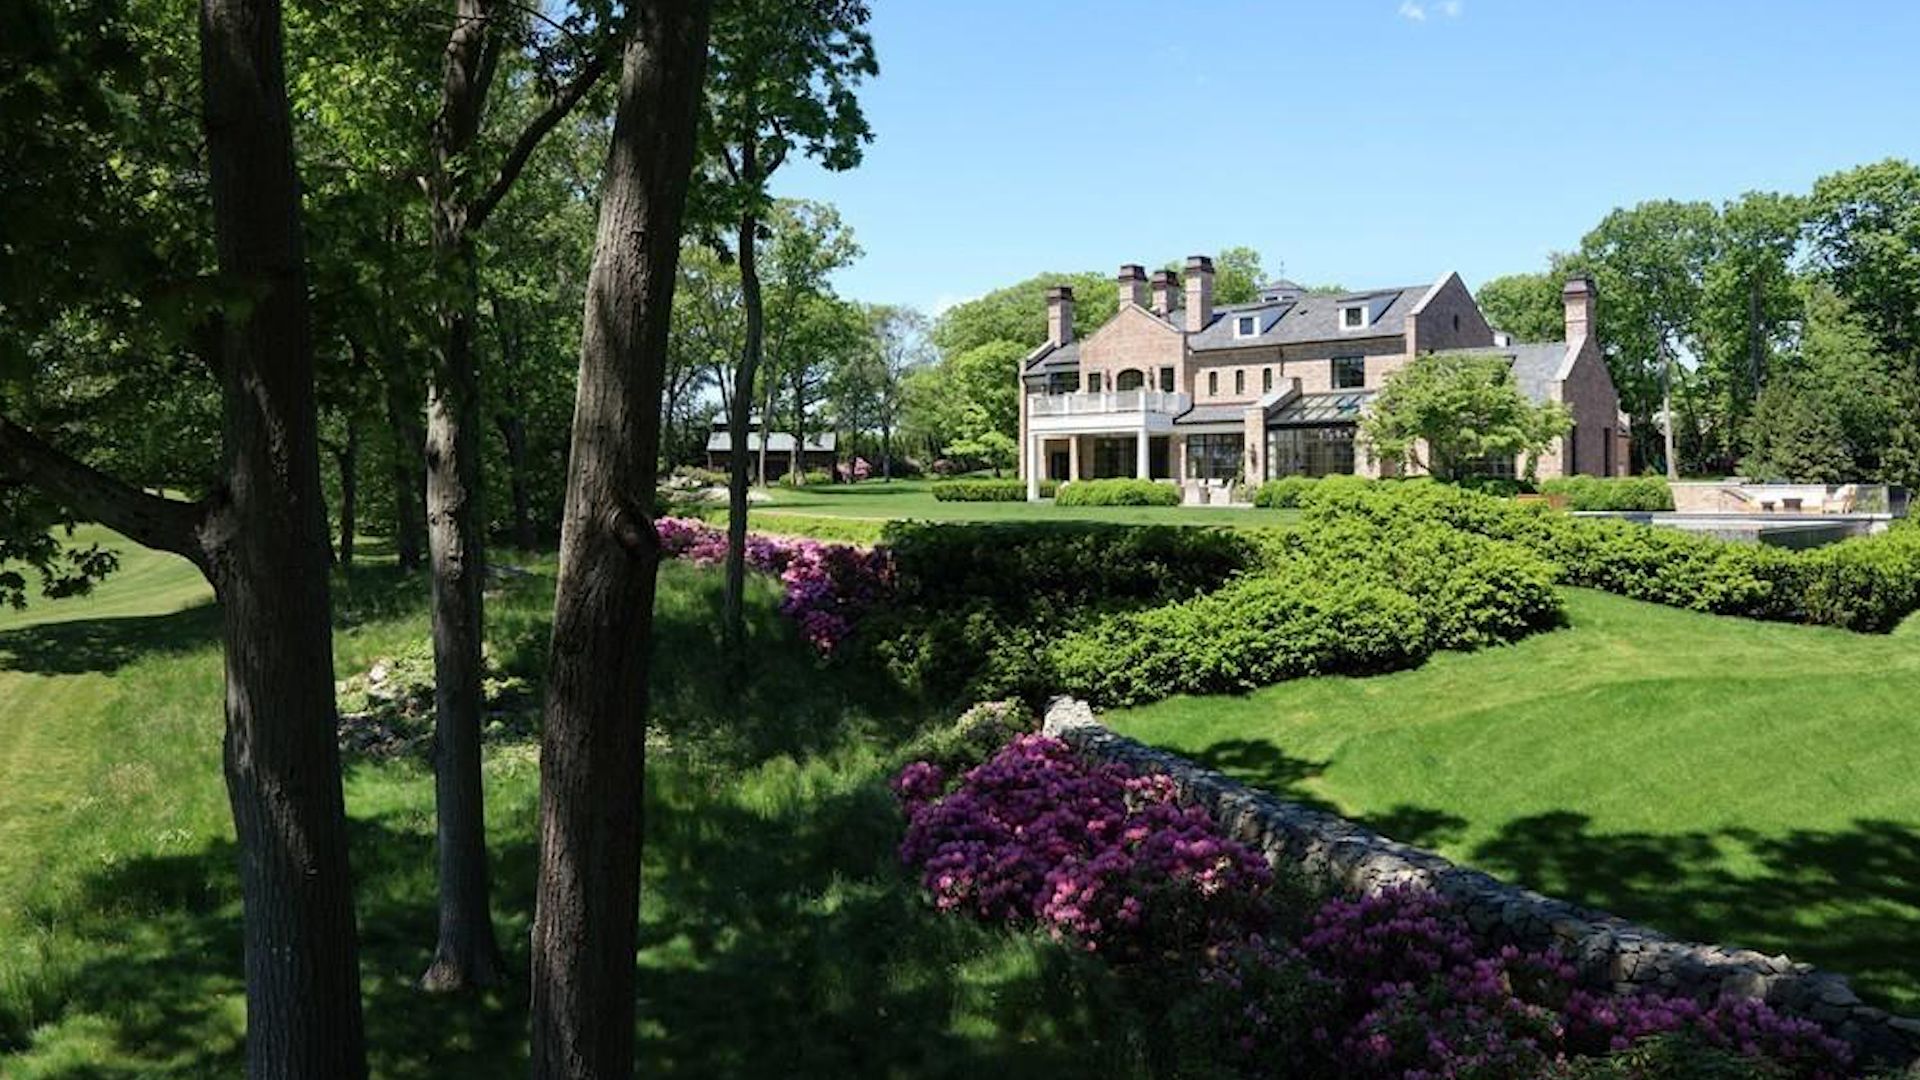 Tom Brady and Gisele Bündchen Finally Sell Boston Mansion